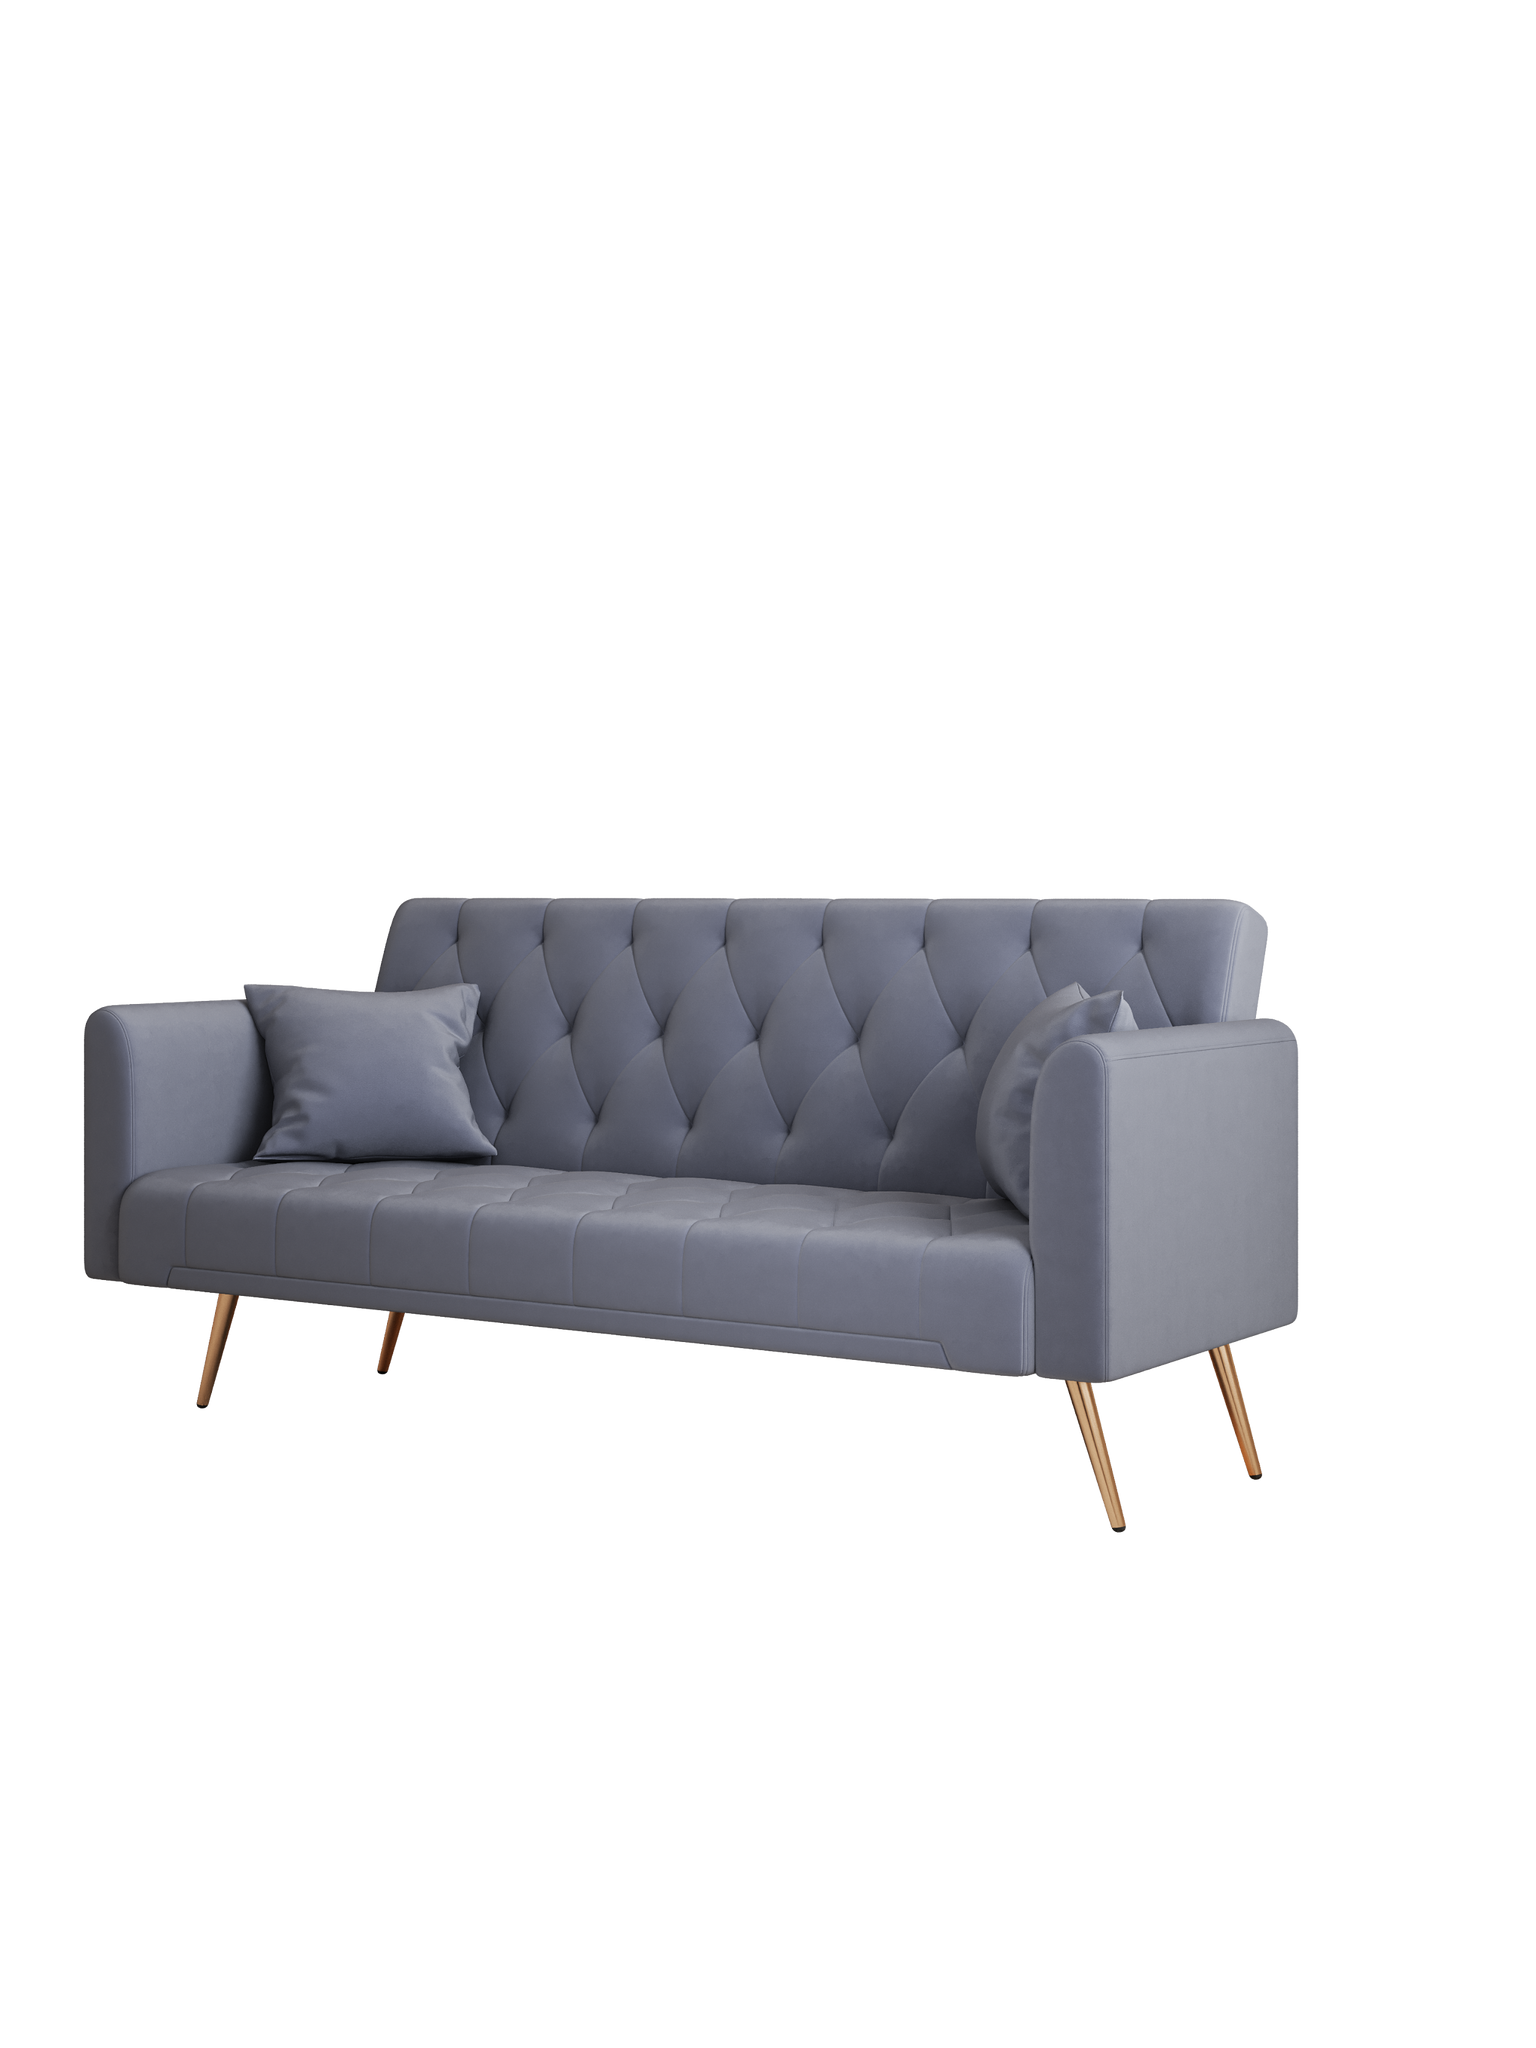 71" Convertible Double Folding Living Room Sofa Bed gray-velvet